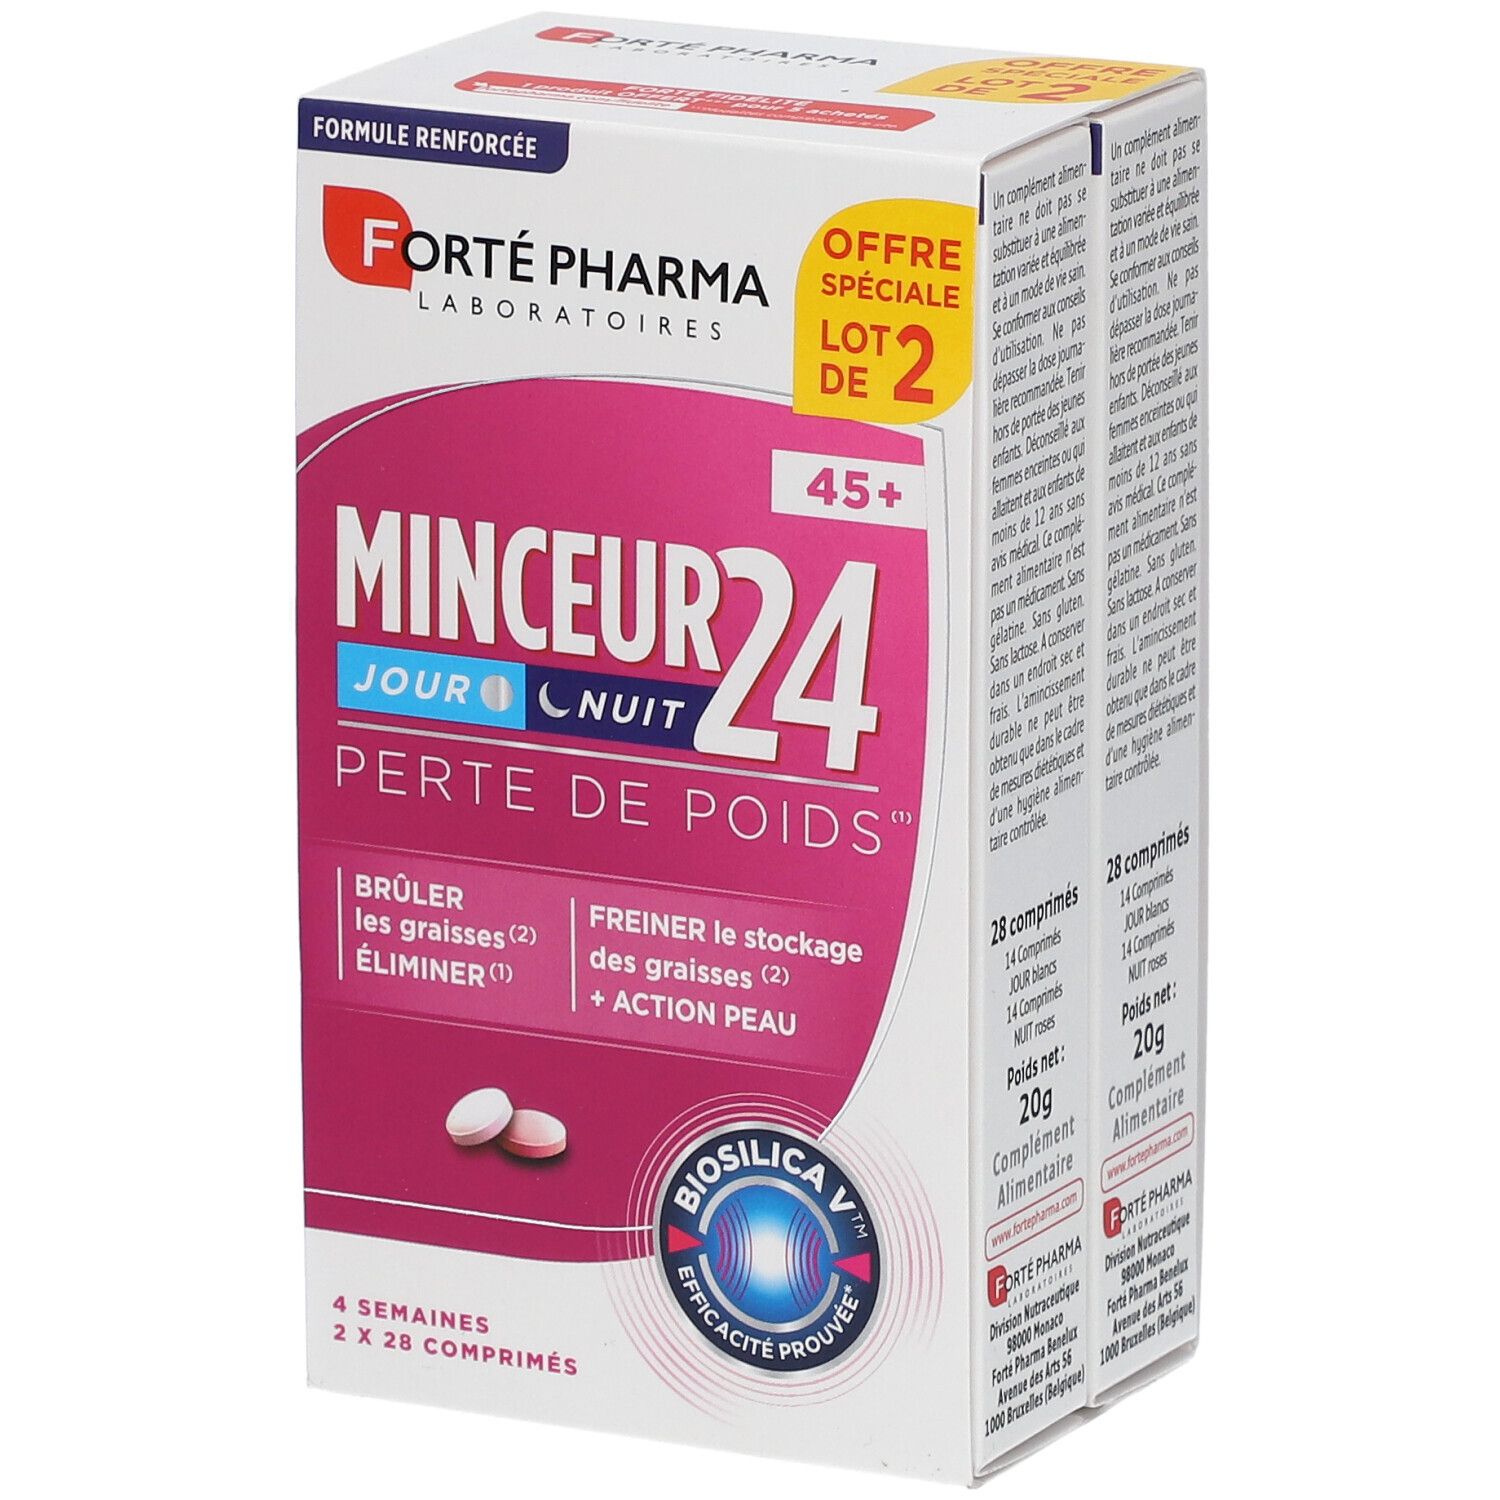 Achetez Forte Pharma Minceur 24 Fort 45+ 2X28 comprimés moins cher